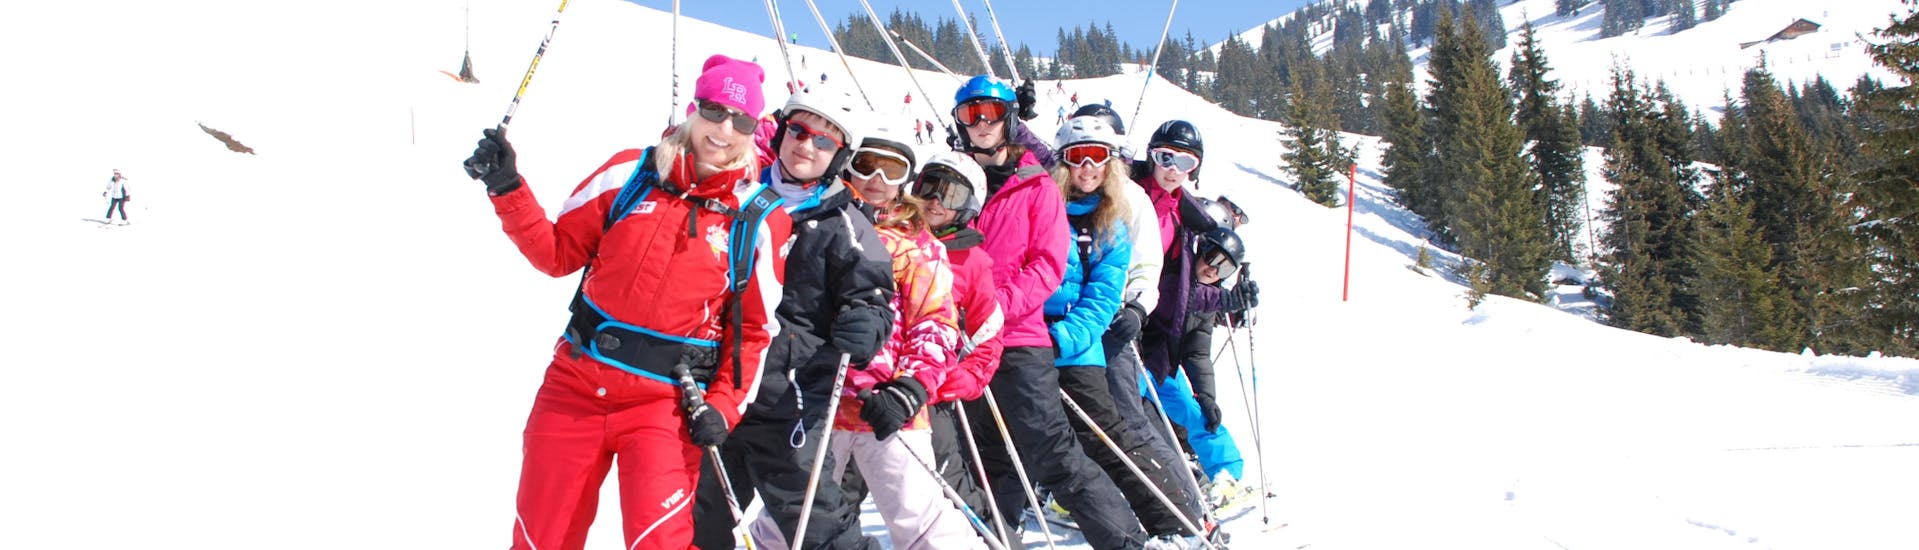 Lezioni di sci per adulti a partire da 14 anni con esperienza.